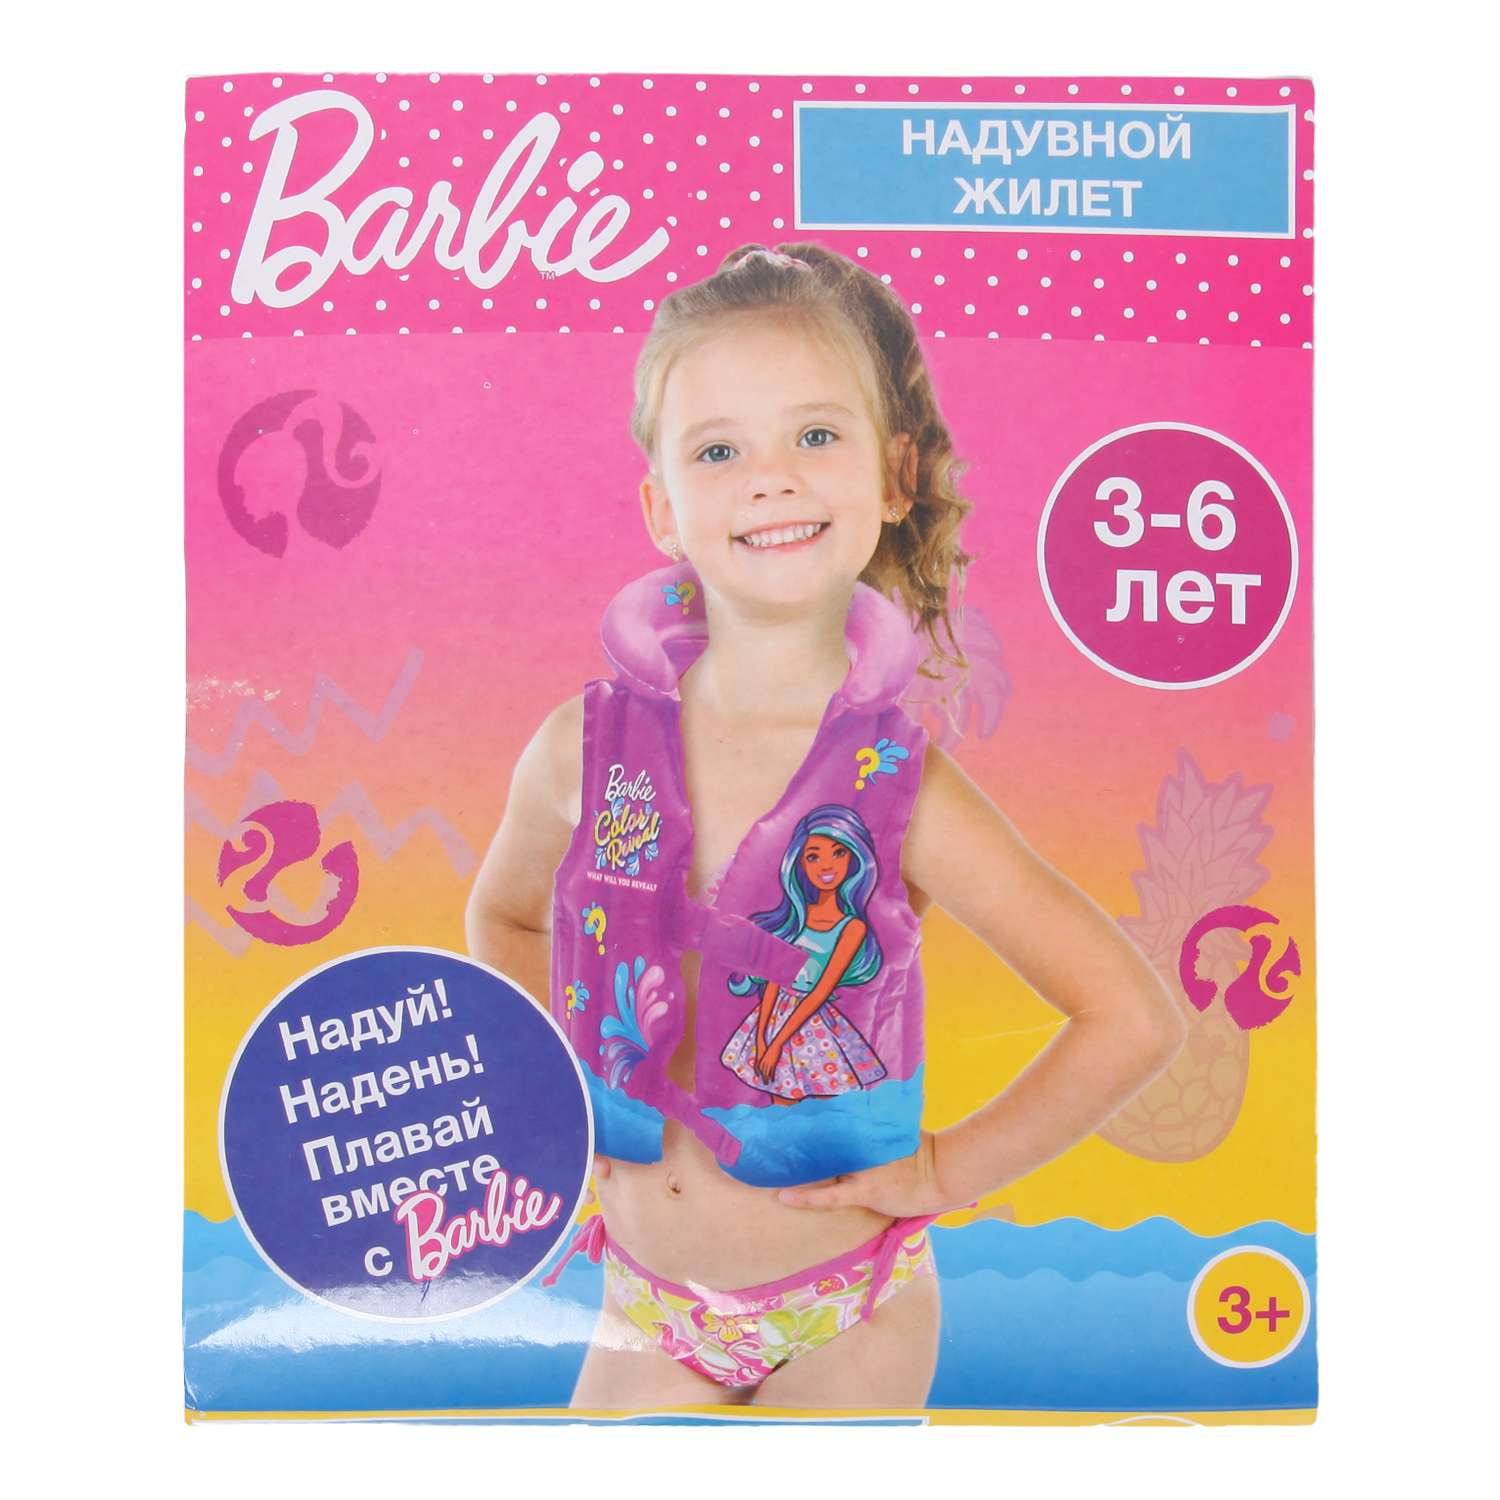 Жилет для плавания Barbie OXSQ-11 - фото 2